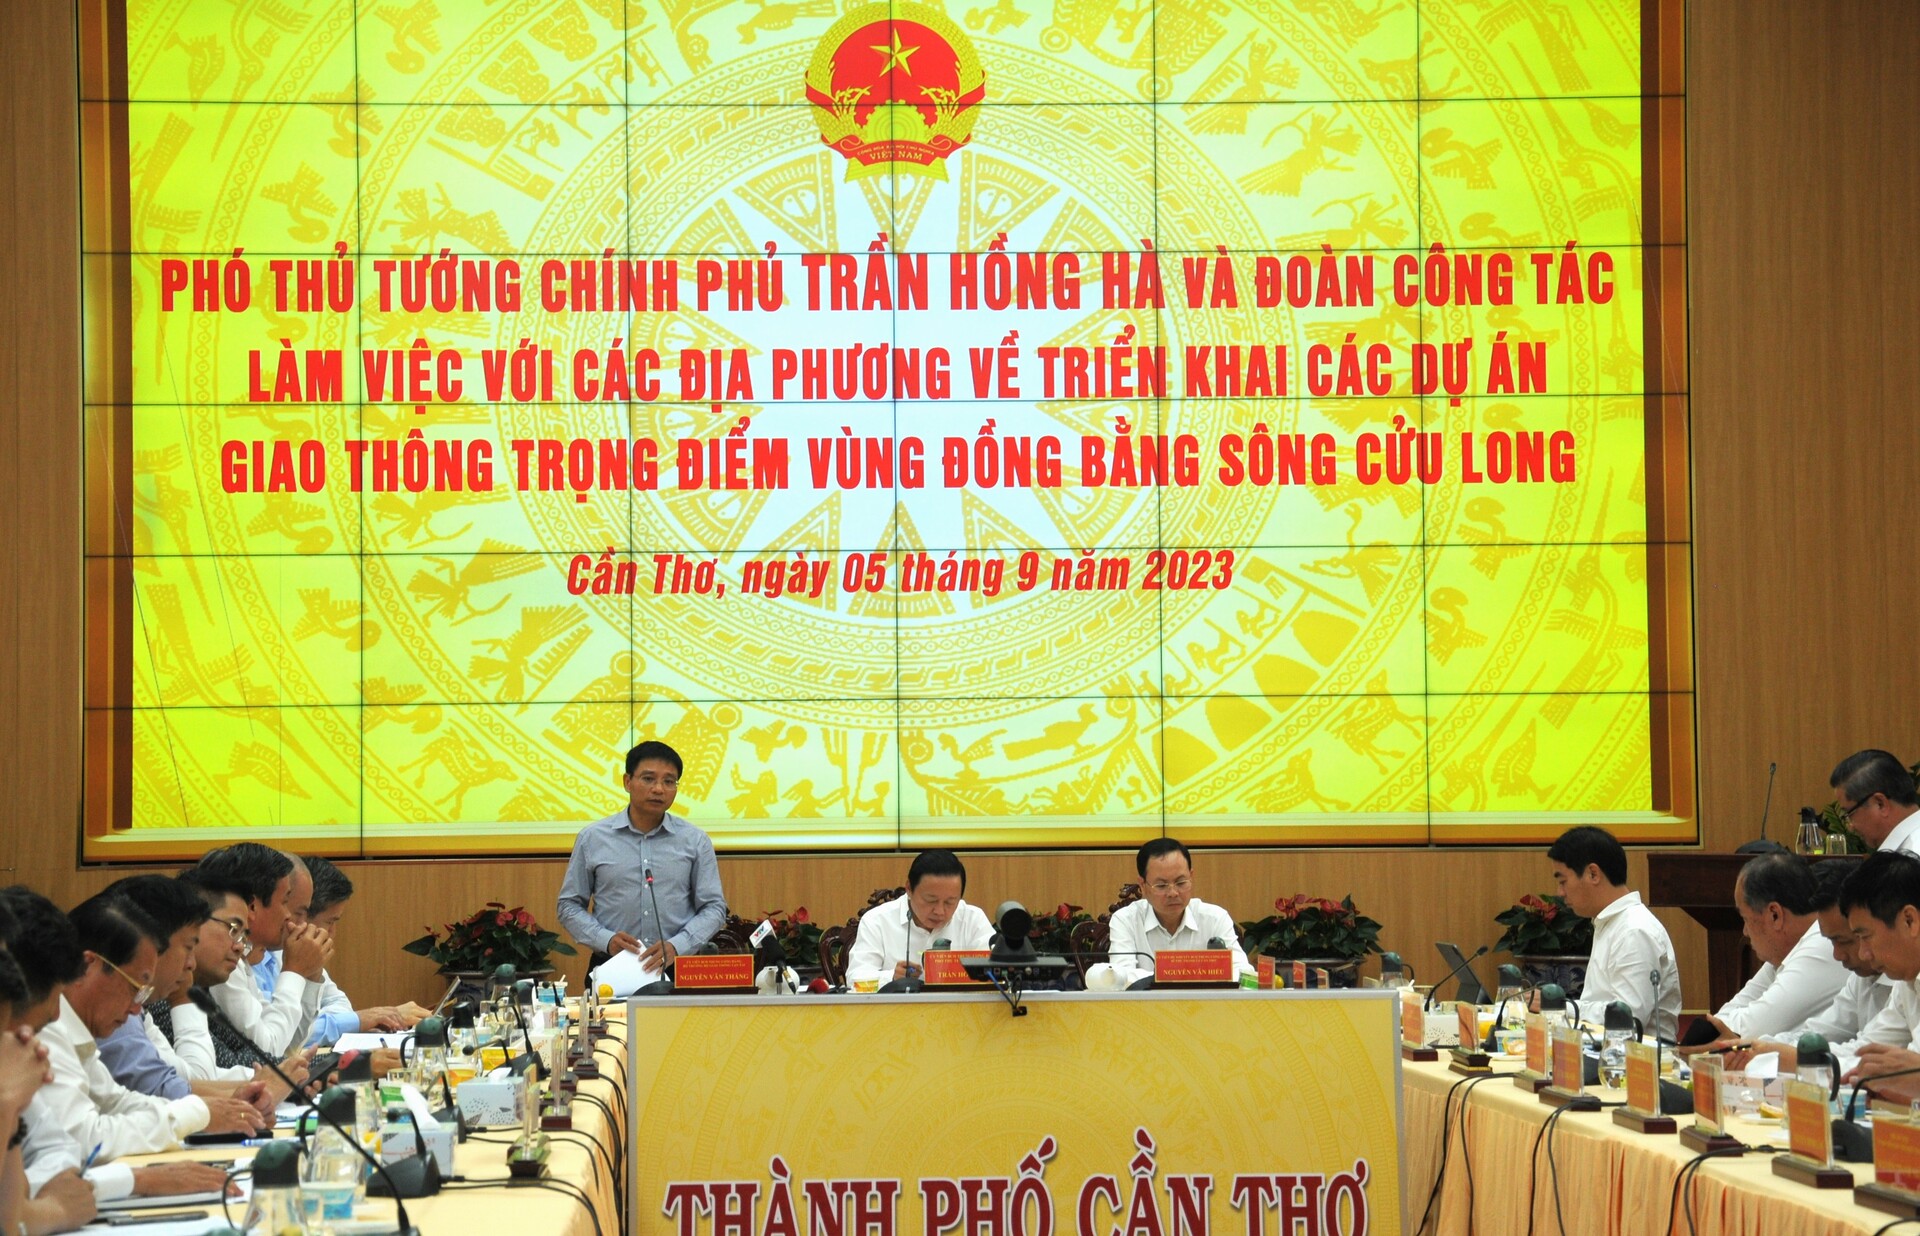 Bộ trưởng Bộ GTVT Nguyễn Văn Thắng khẳng định, toàn vùng hiện giờ chỉ cần 54 triệu khối, trong khi giấy phép các địa phương cấp hiện nay lên tới 120 mỏ với 120 triệu khối. Trữ lượng vượt xa nhu cầu.